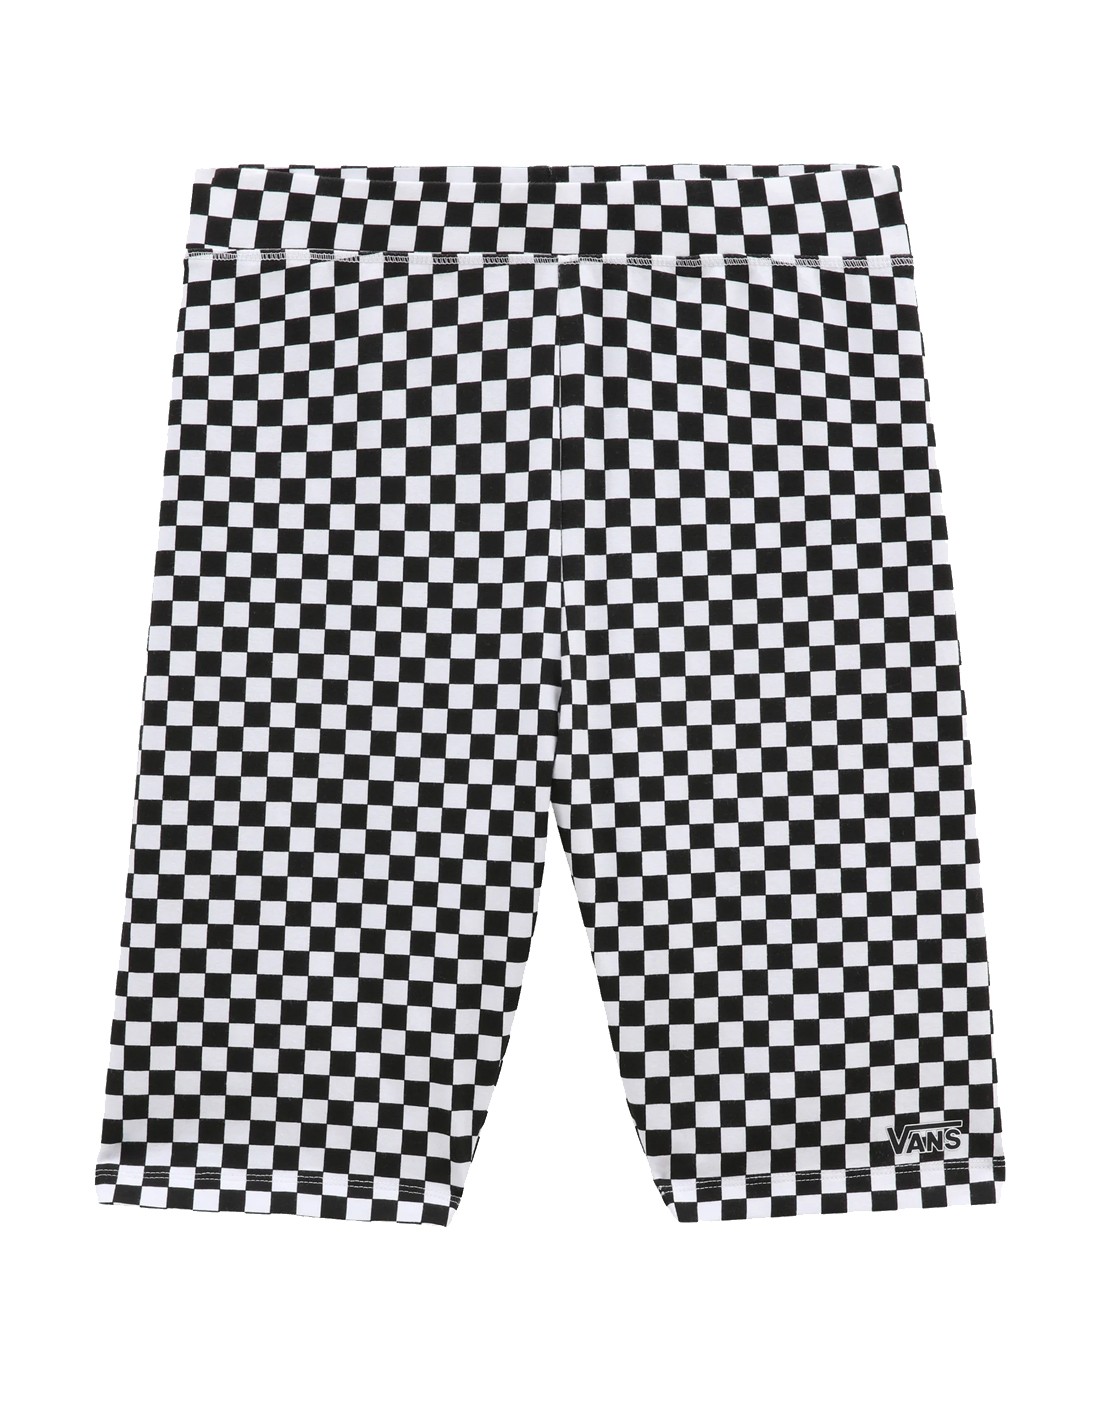 Print V Legging Women Black/White - Flying Short - VANS Checkerboard